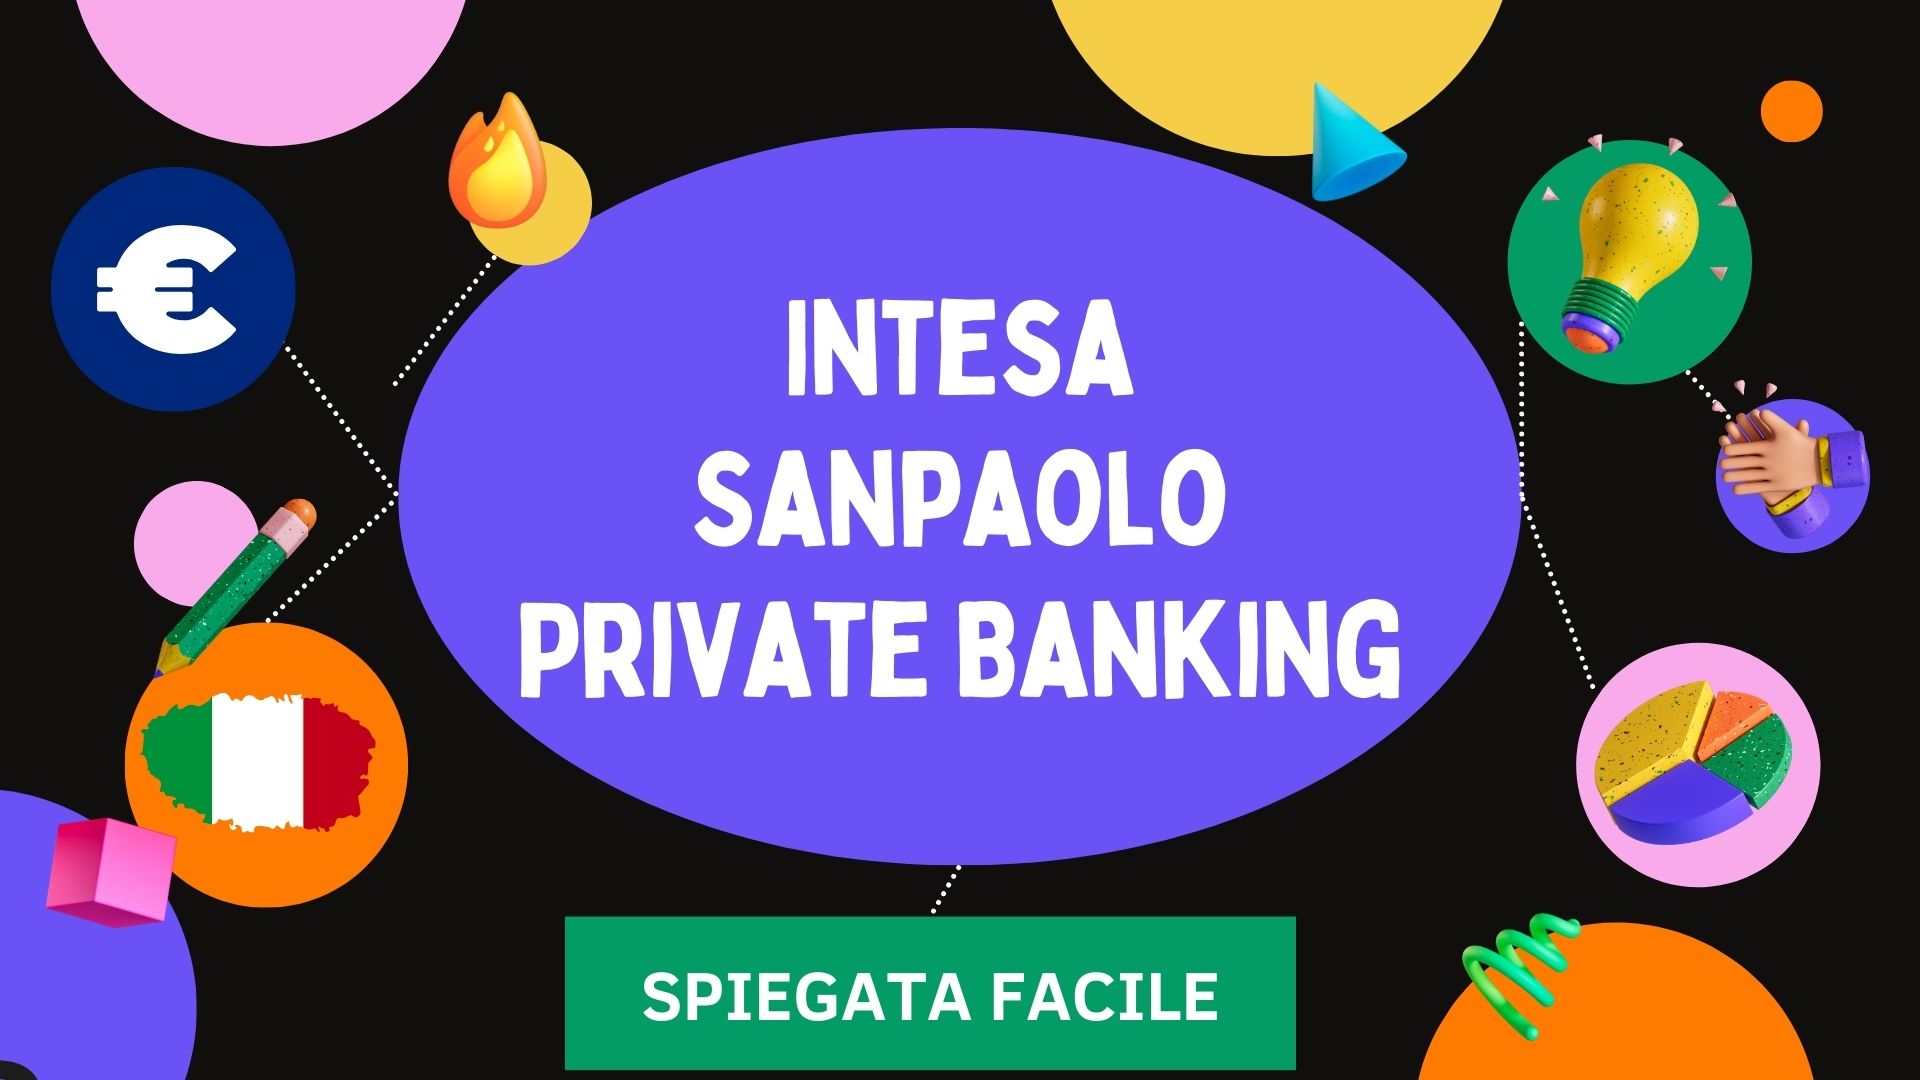 Intesa Sanpaolo Private Banking